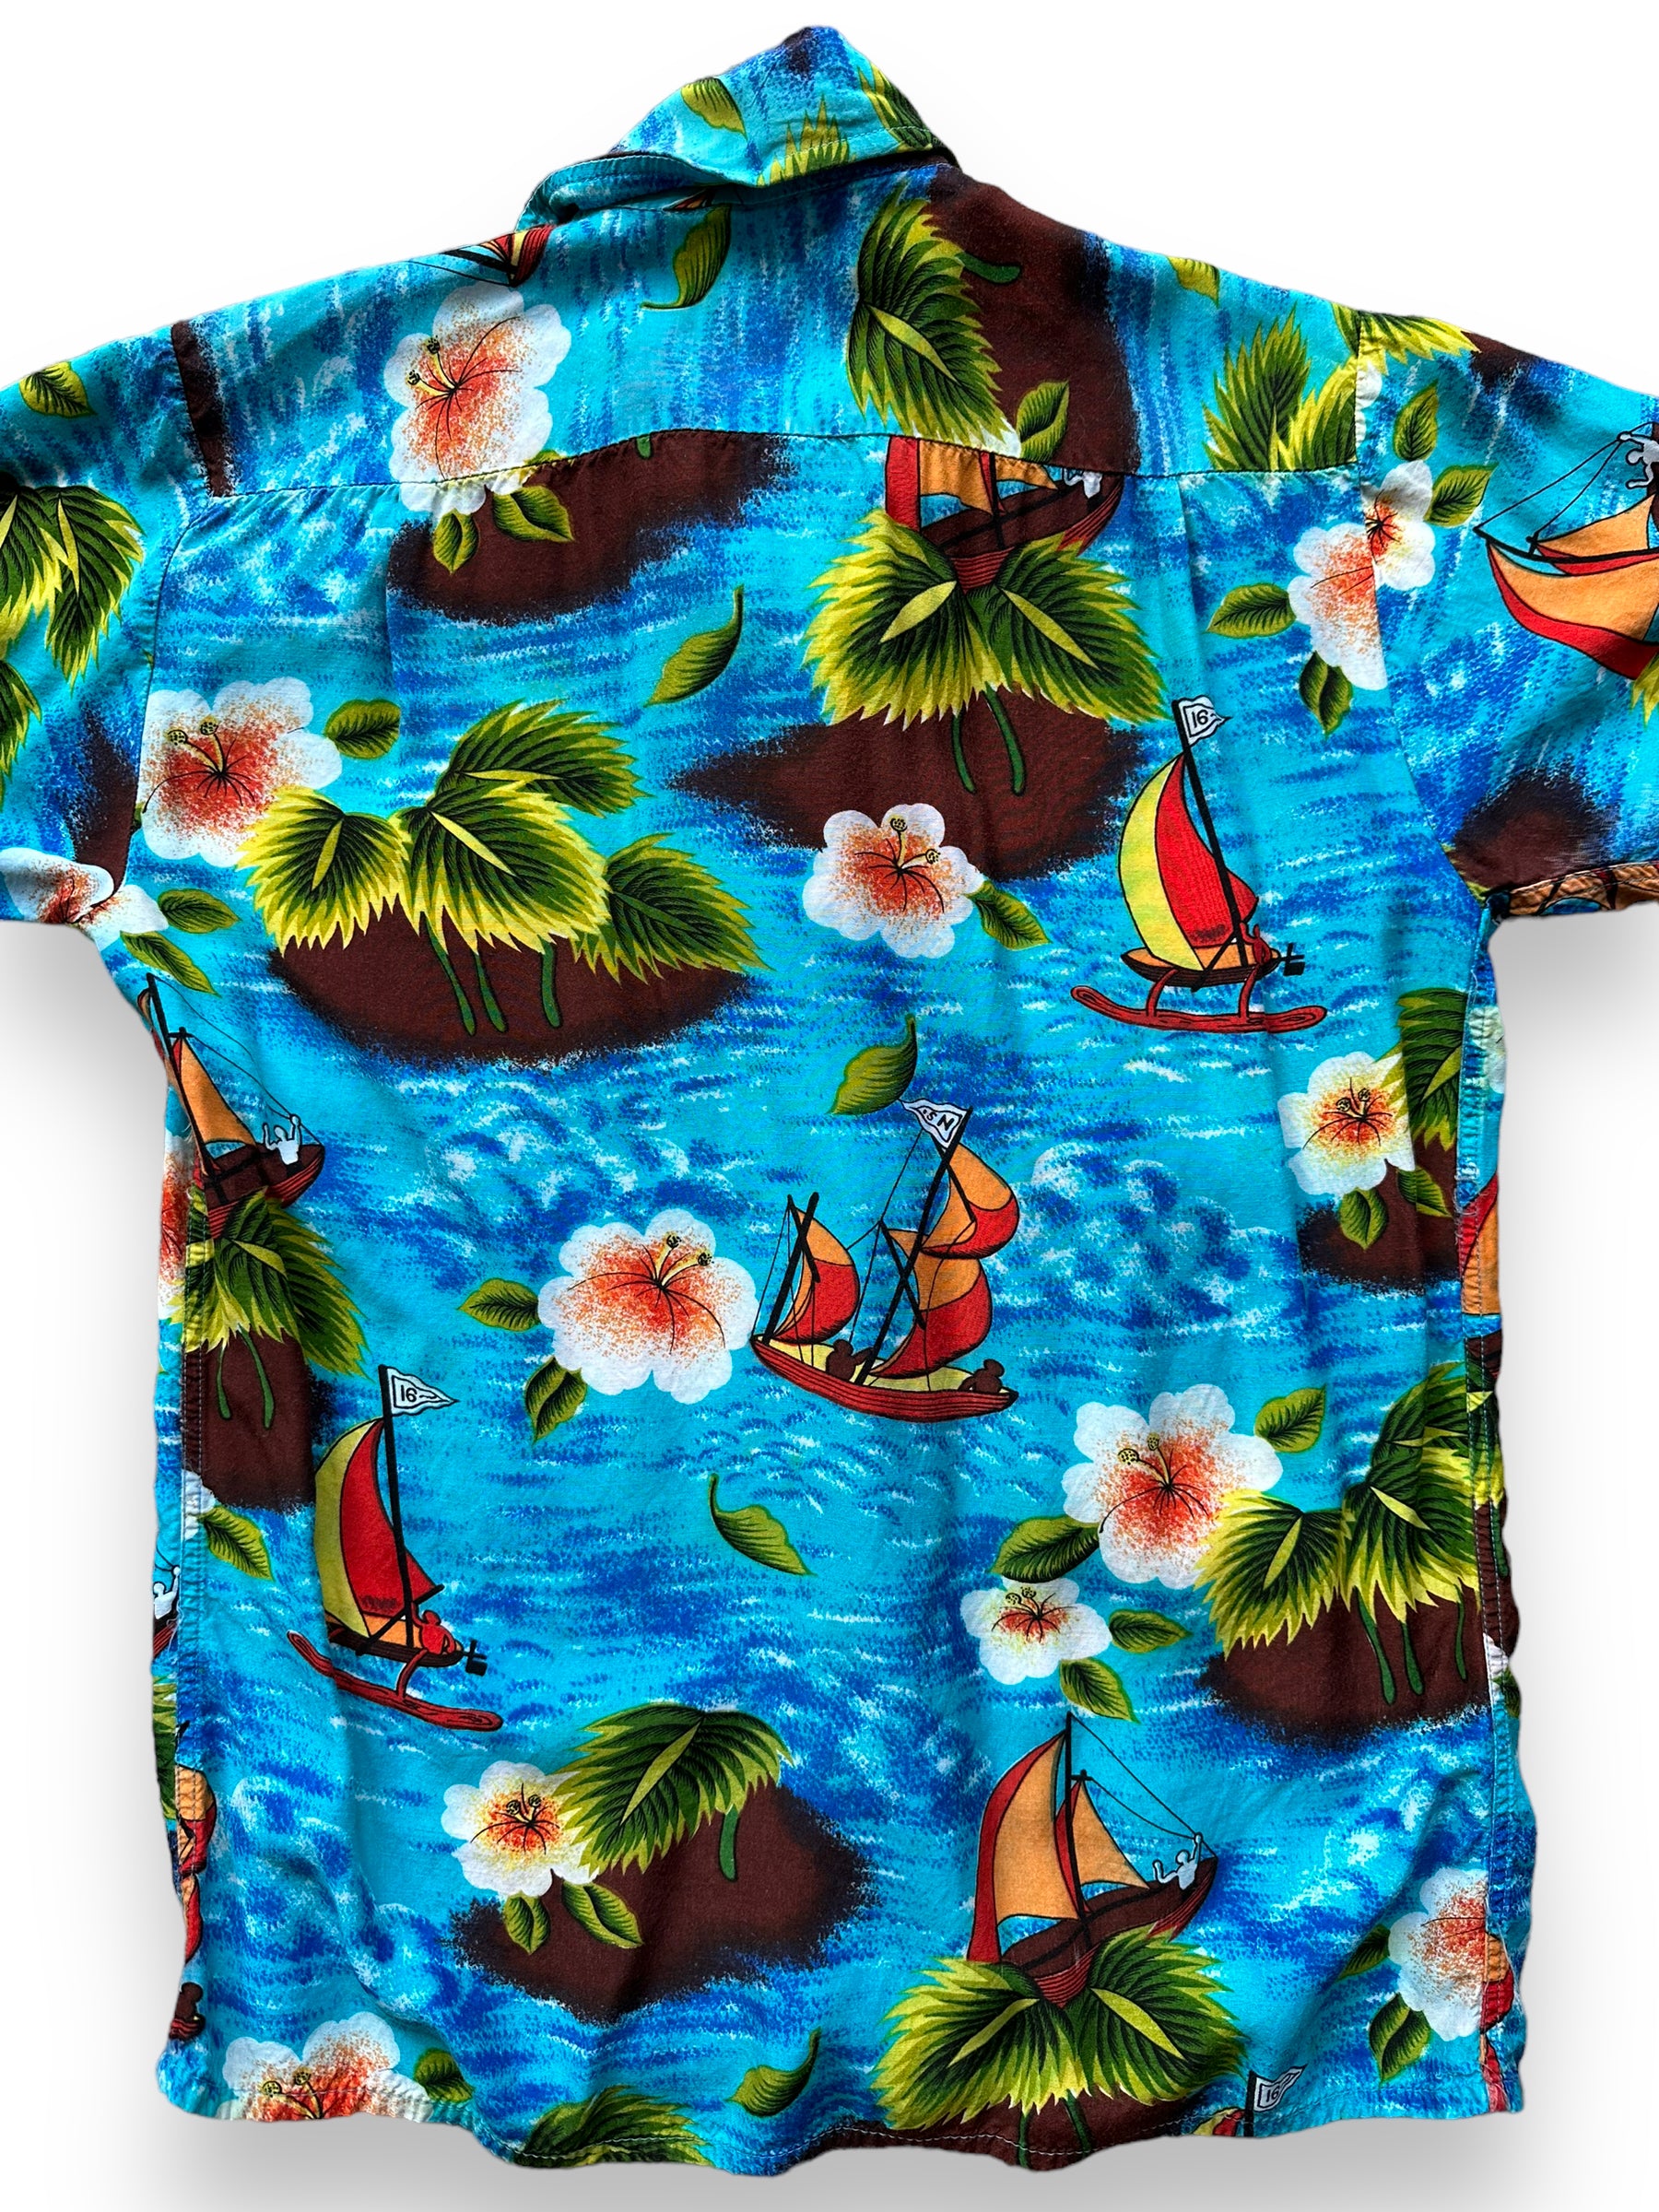 Tropical Hawaiian Floral Flowers Tie Dye Look Print Tee Shirt